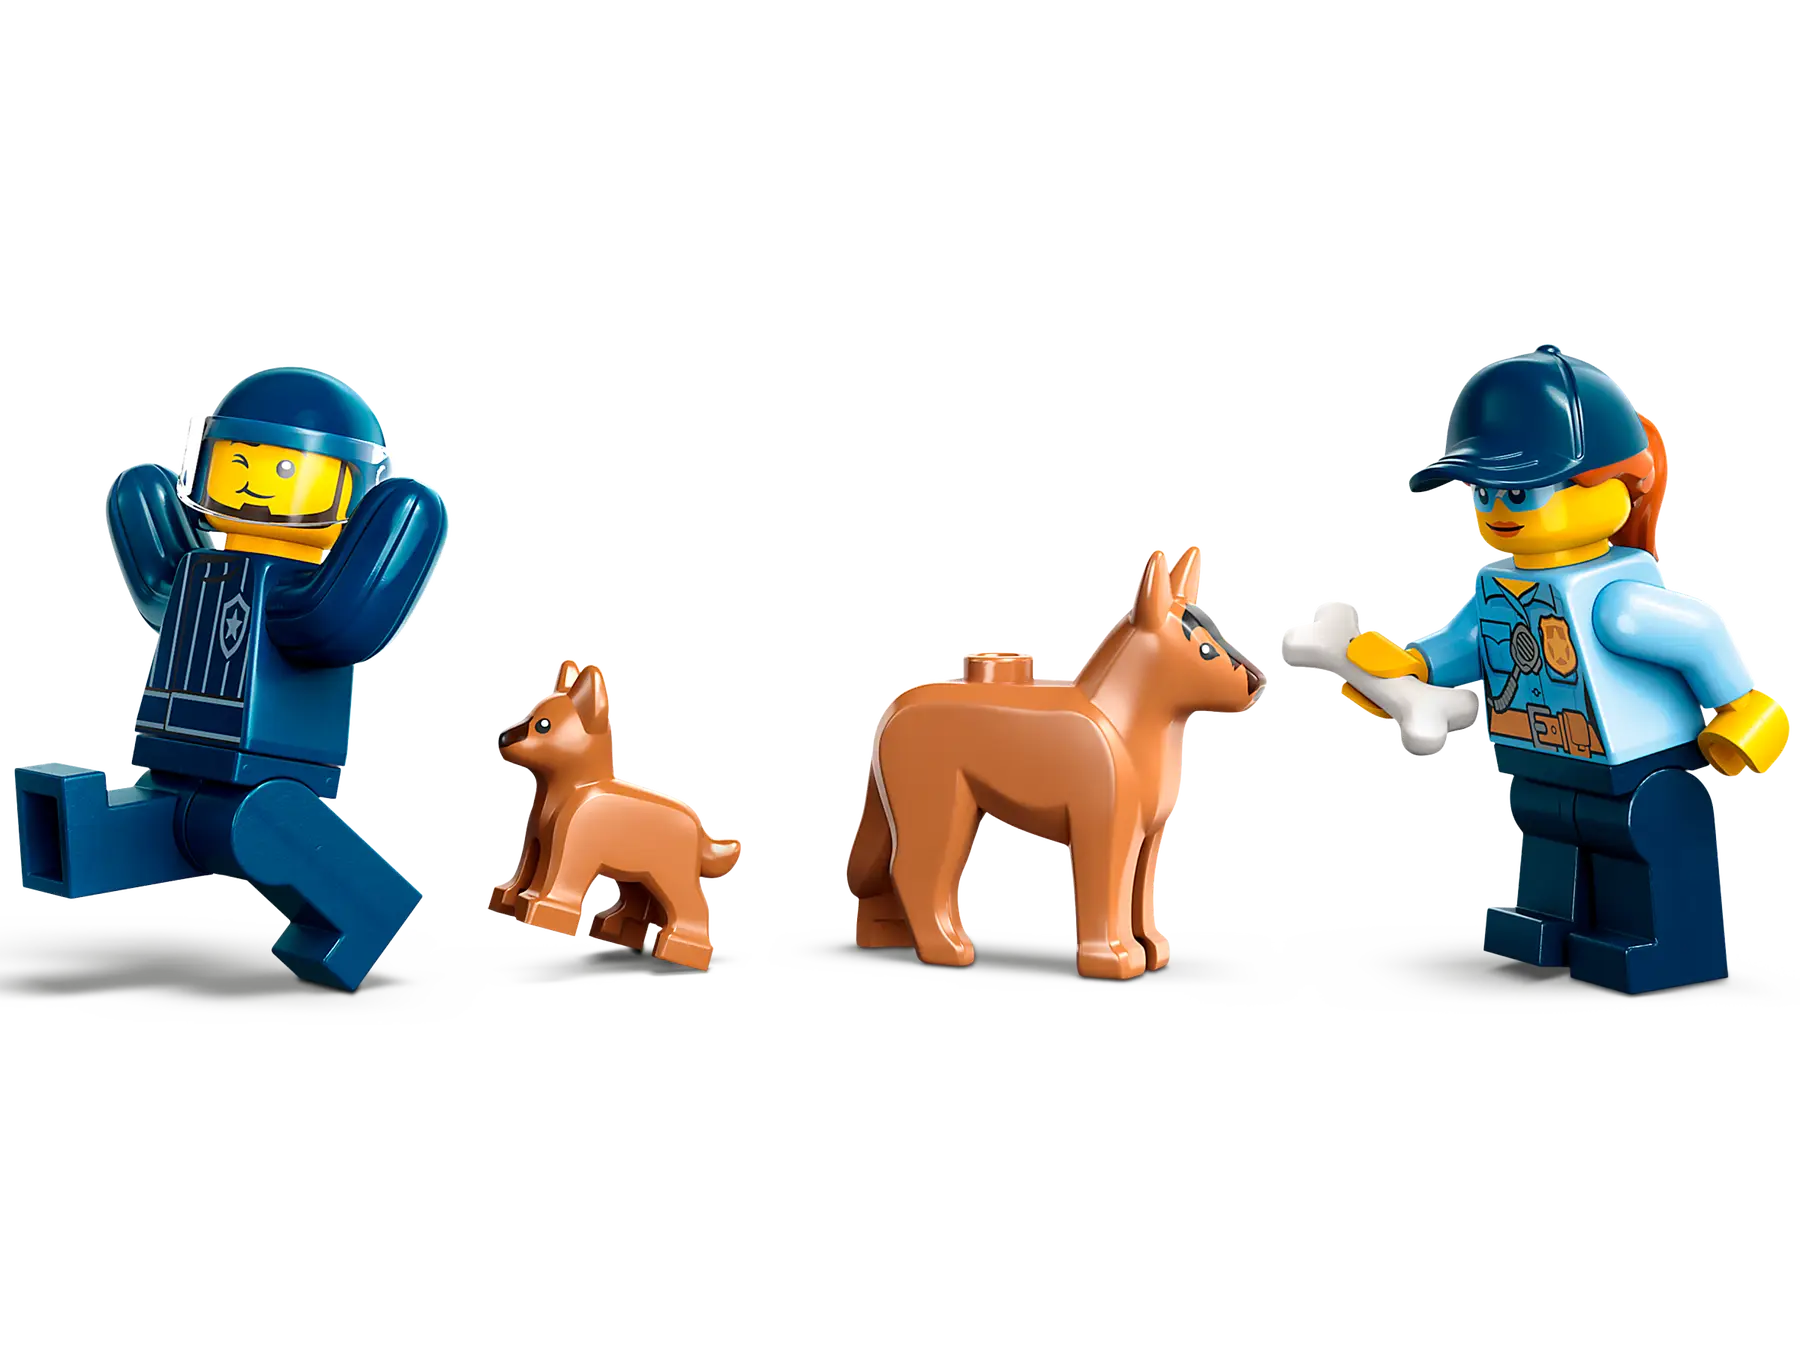 Lego City - Mobile Police Dog Training